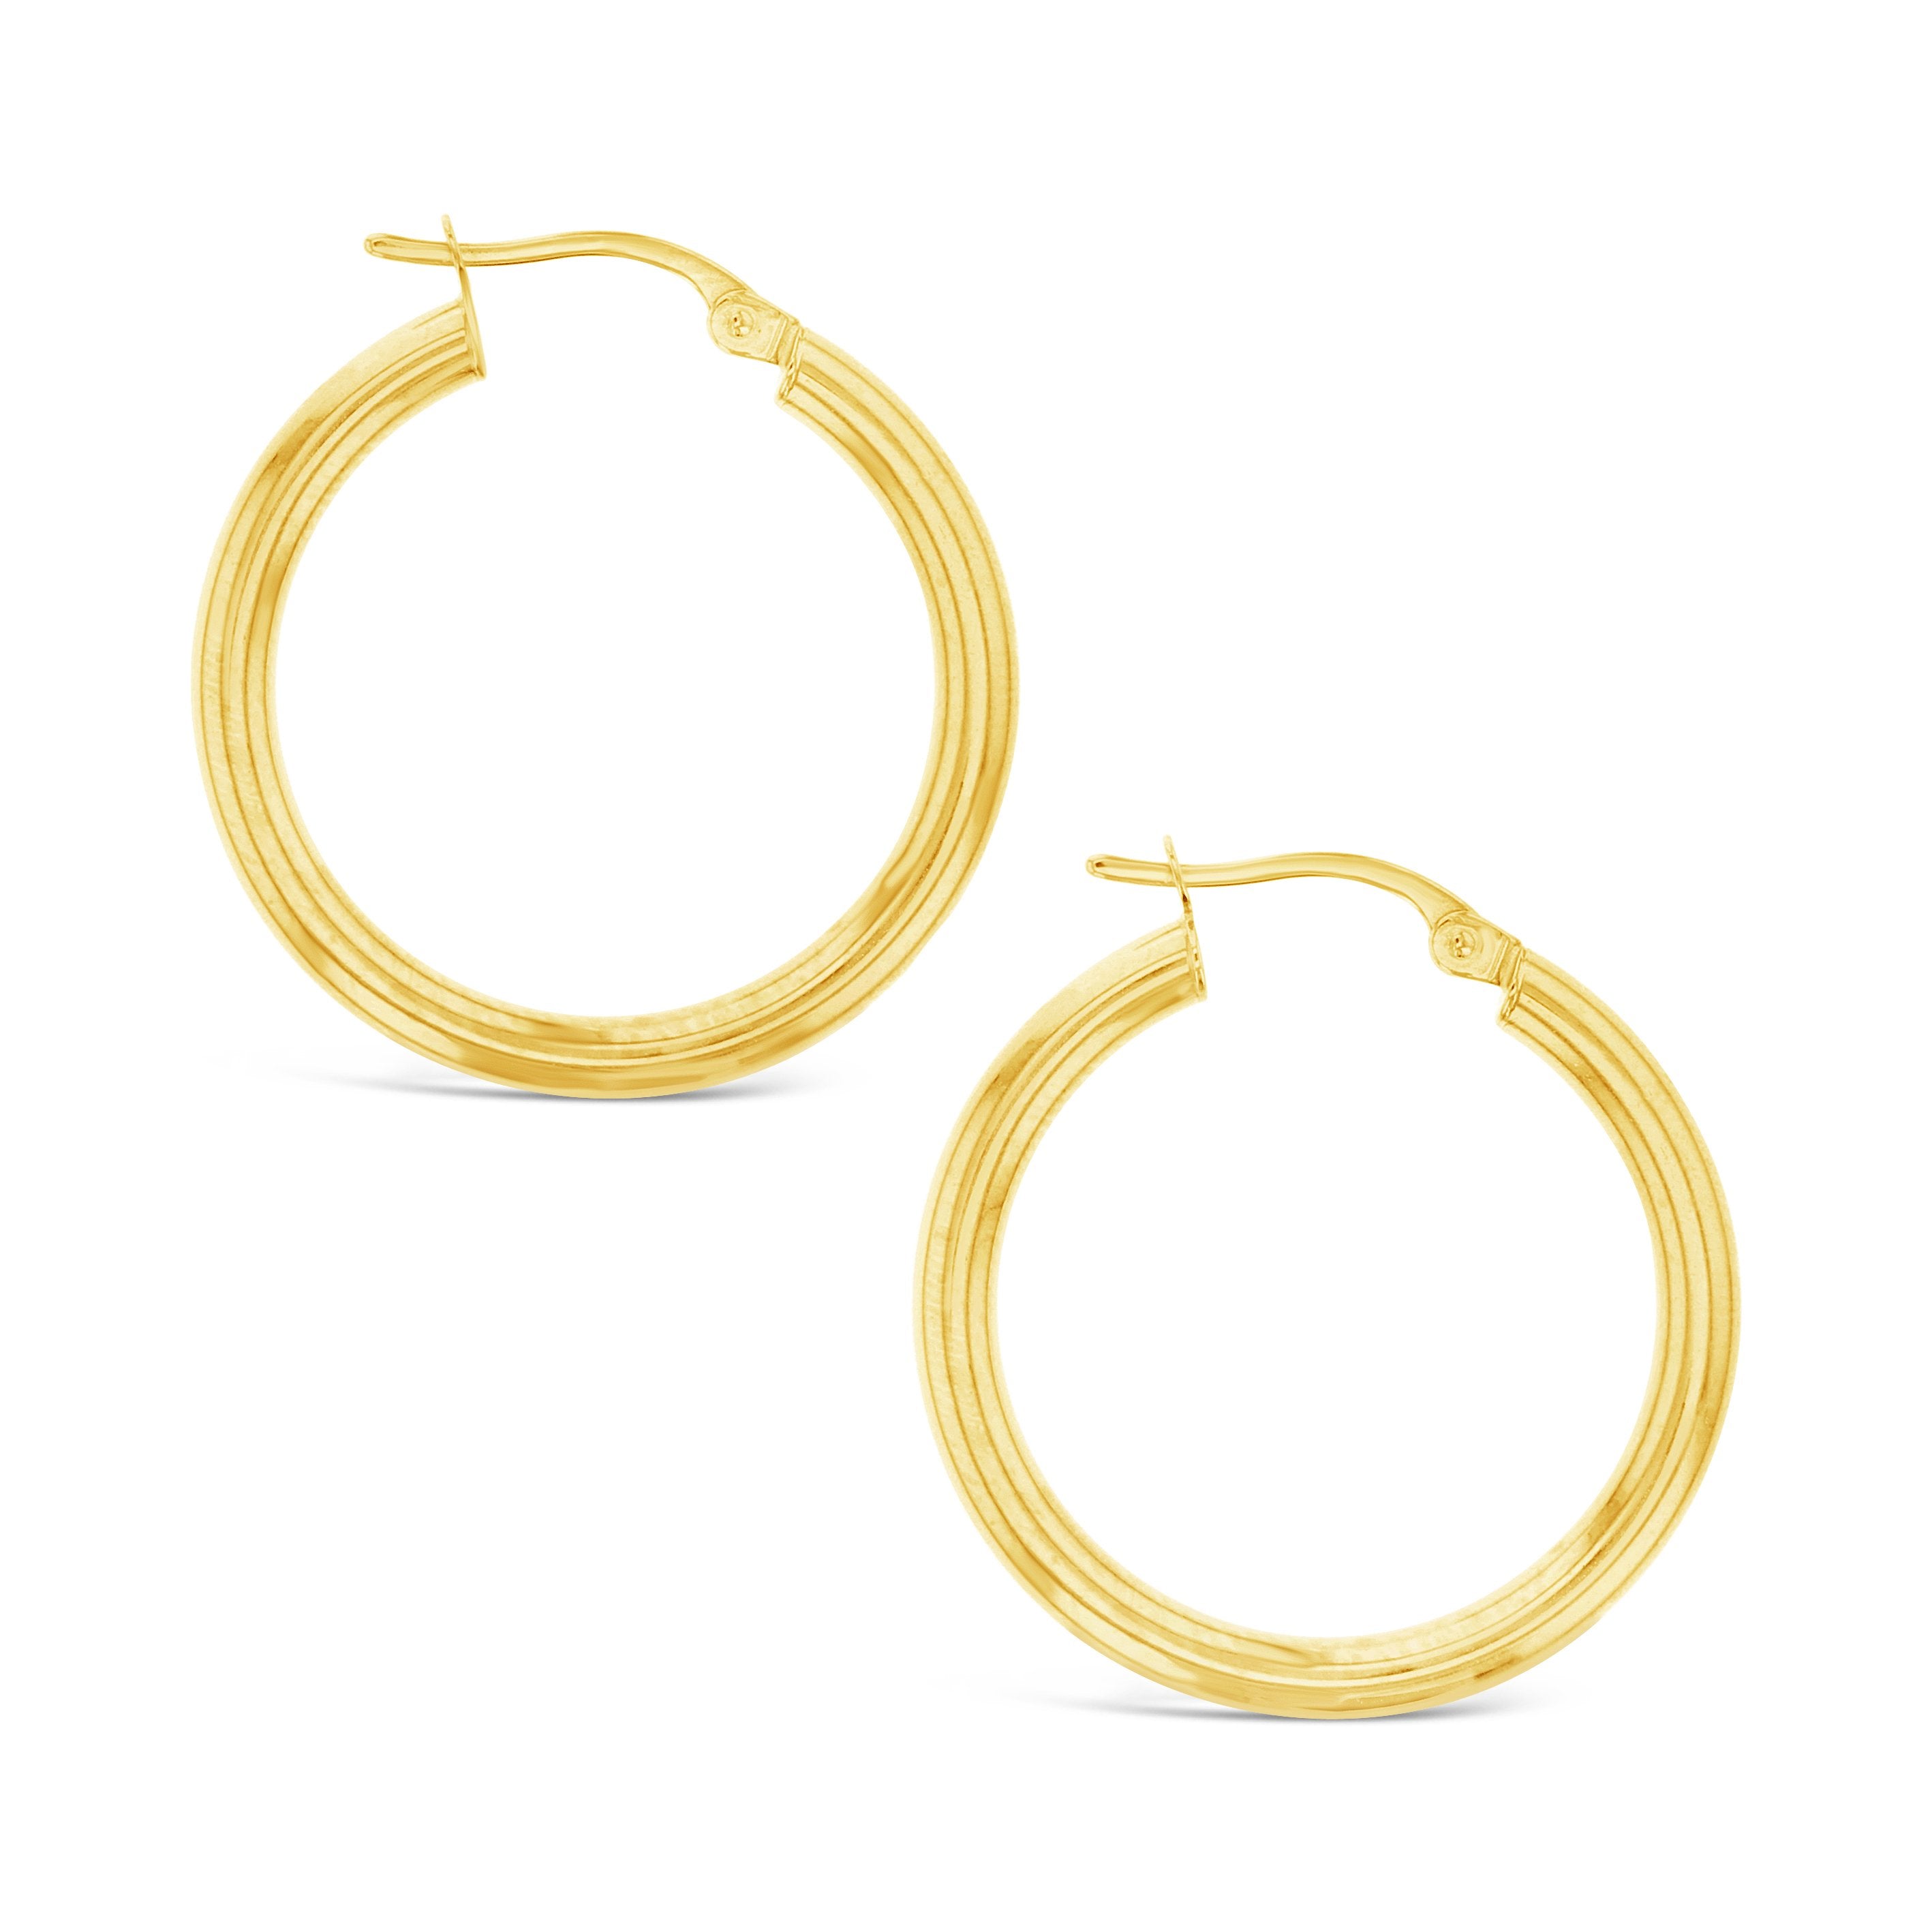 Plain 20mm Hoop Earrings in 9ct Gold